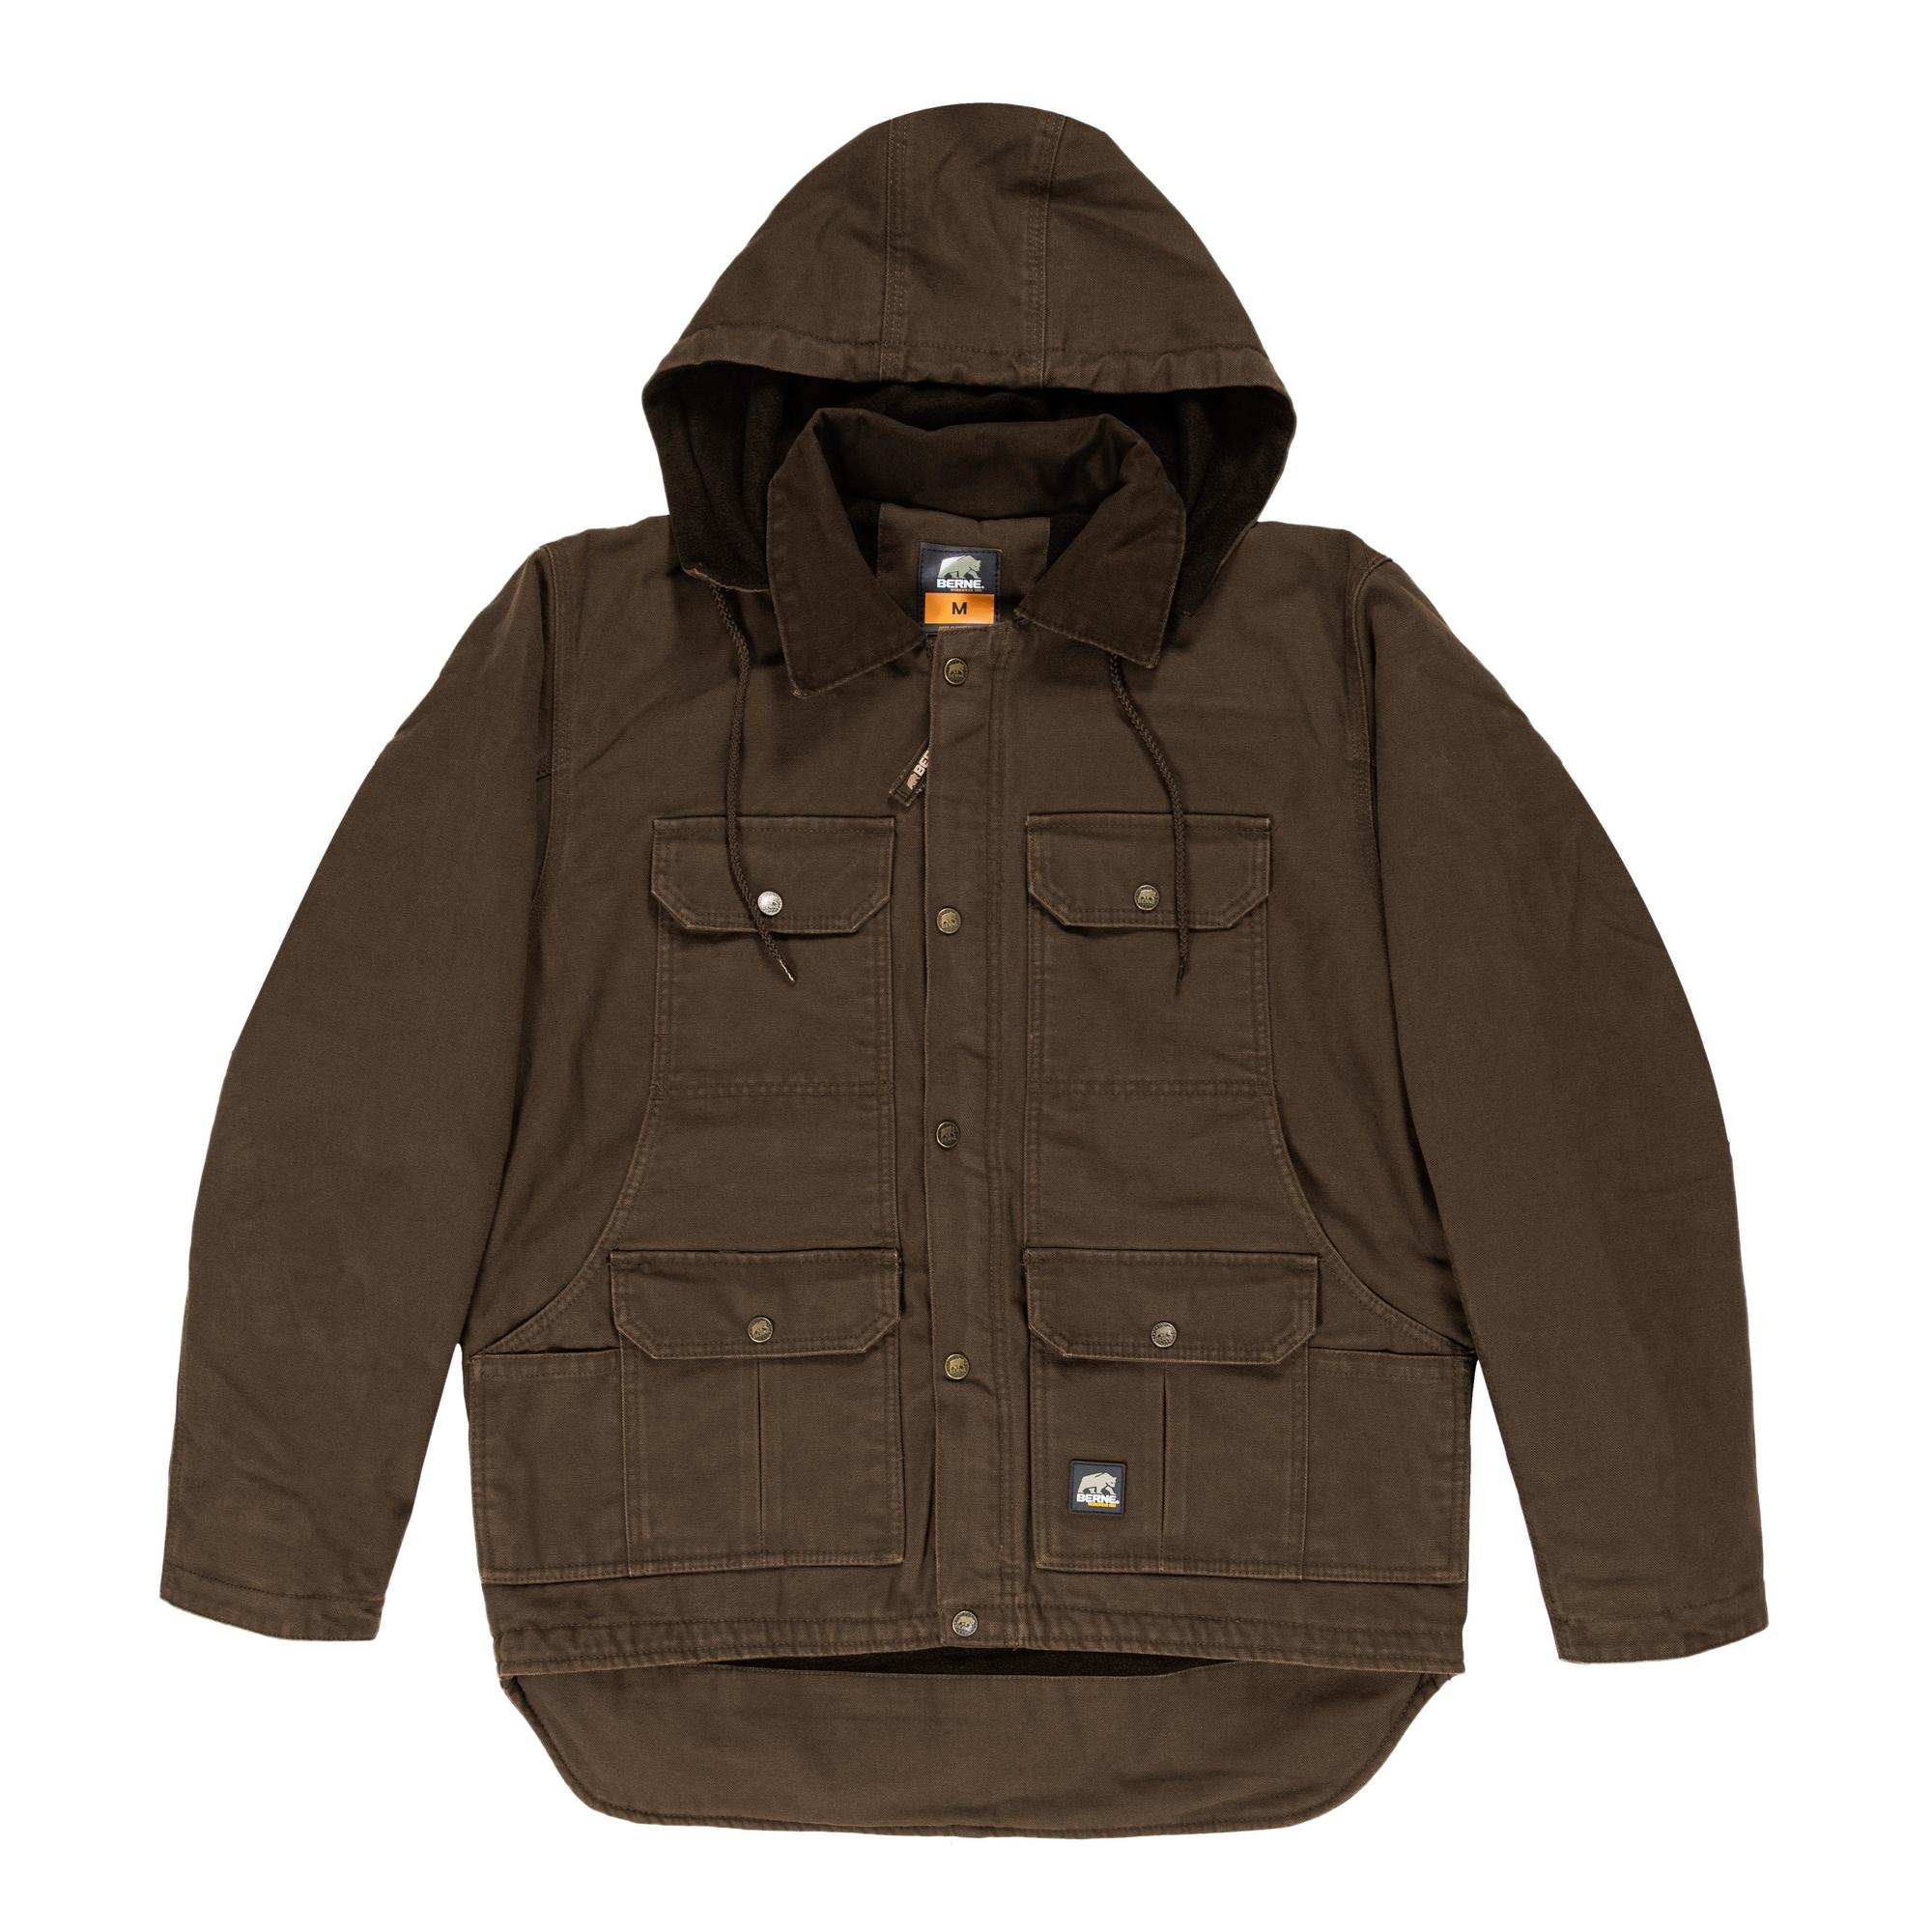 Berne Apparel, Heritage Hooded Jacket, Size 4XL, Color Bark, Model JC613